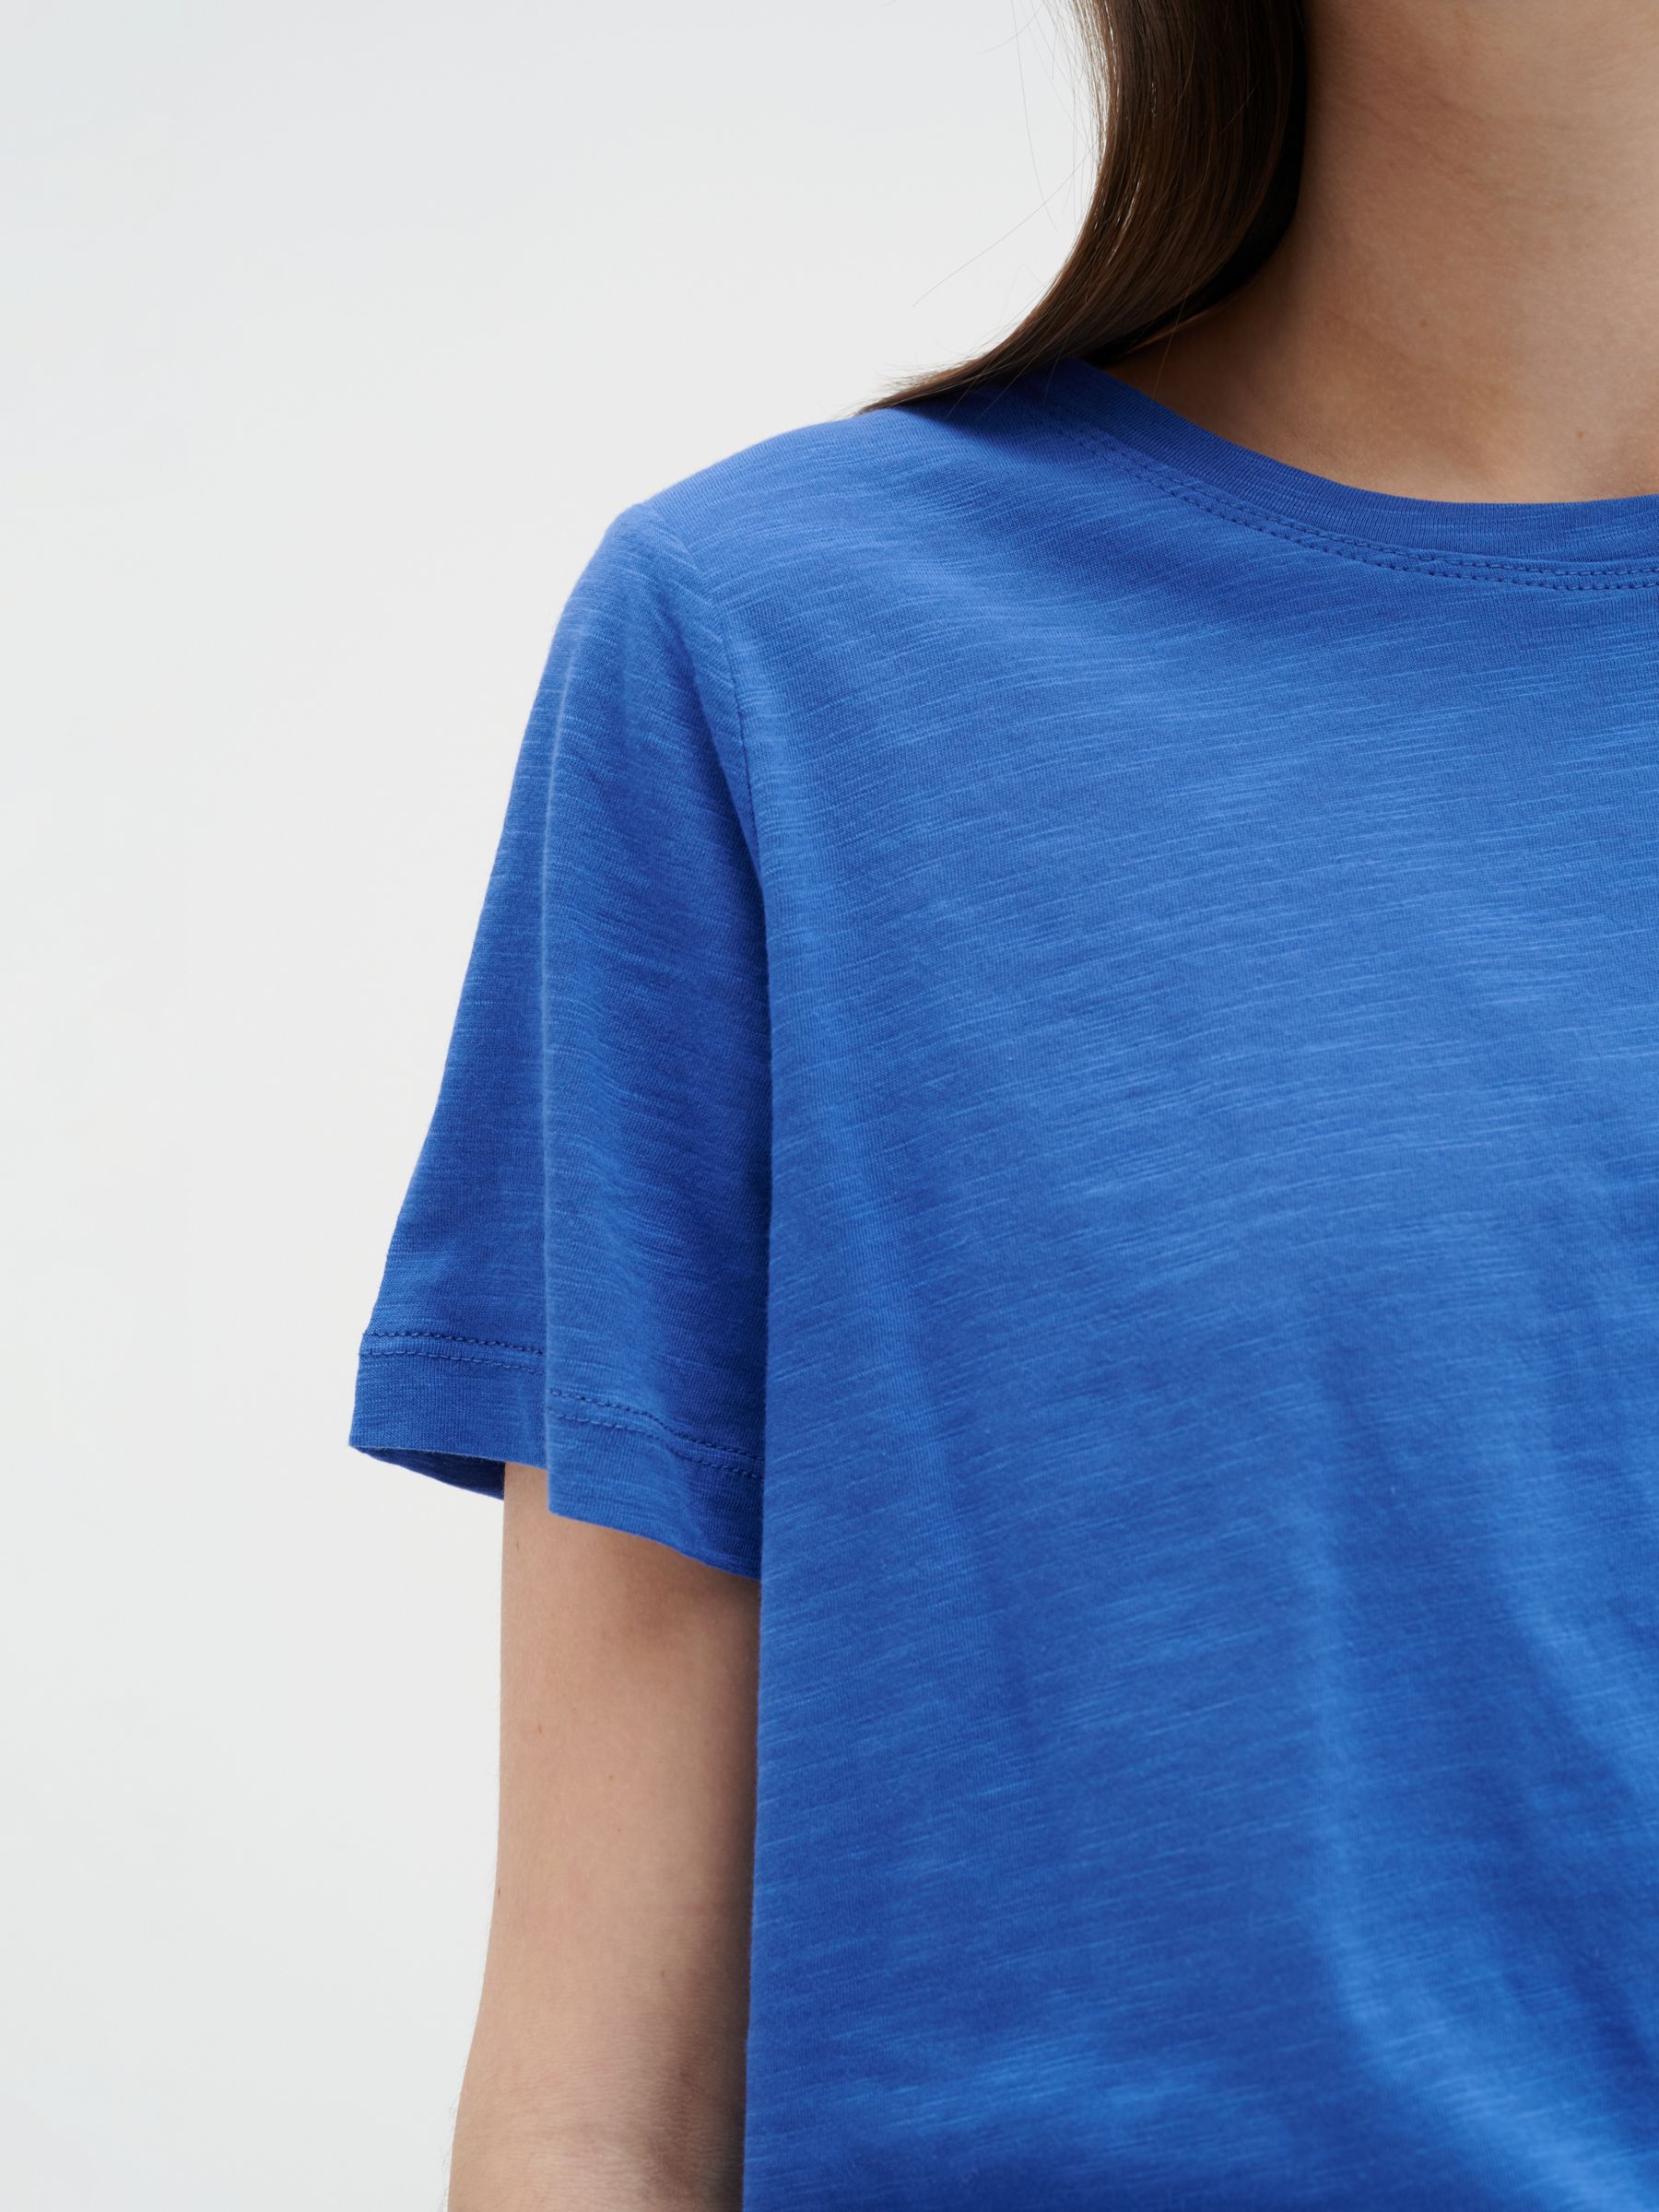 InWear Alma Plain T-Shirt, Sea Blue at John Lewis & Partners